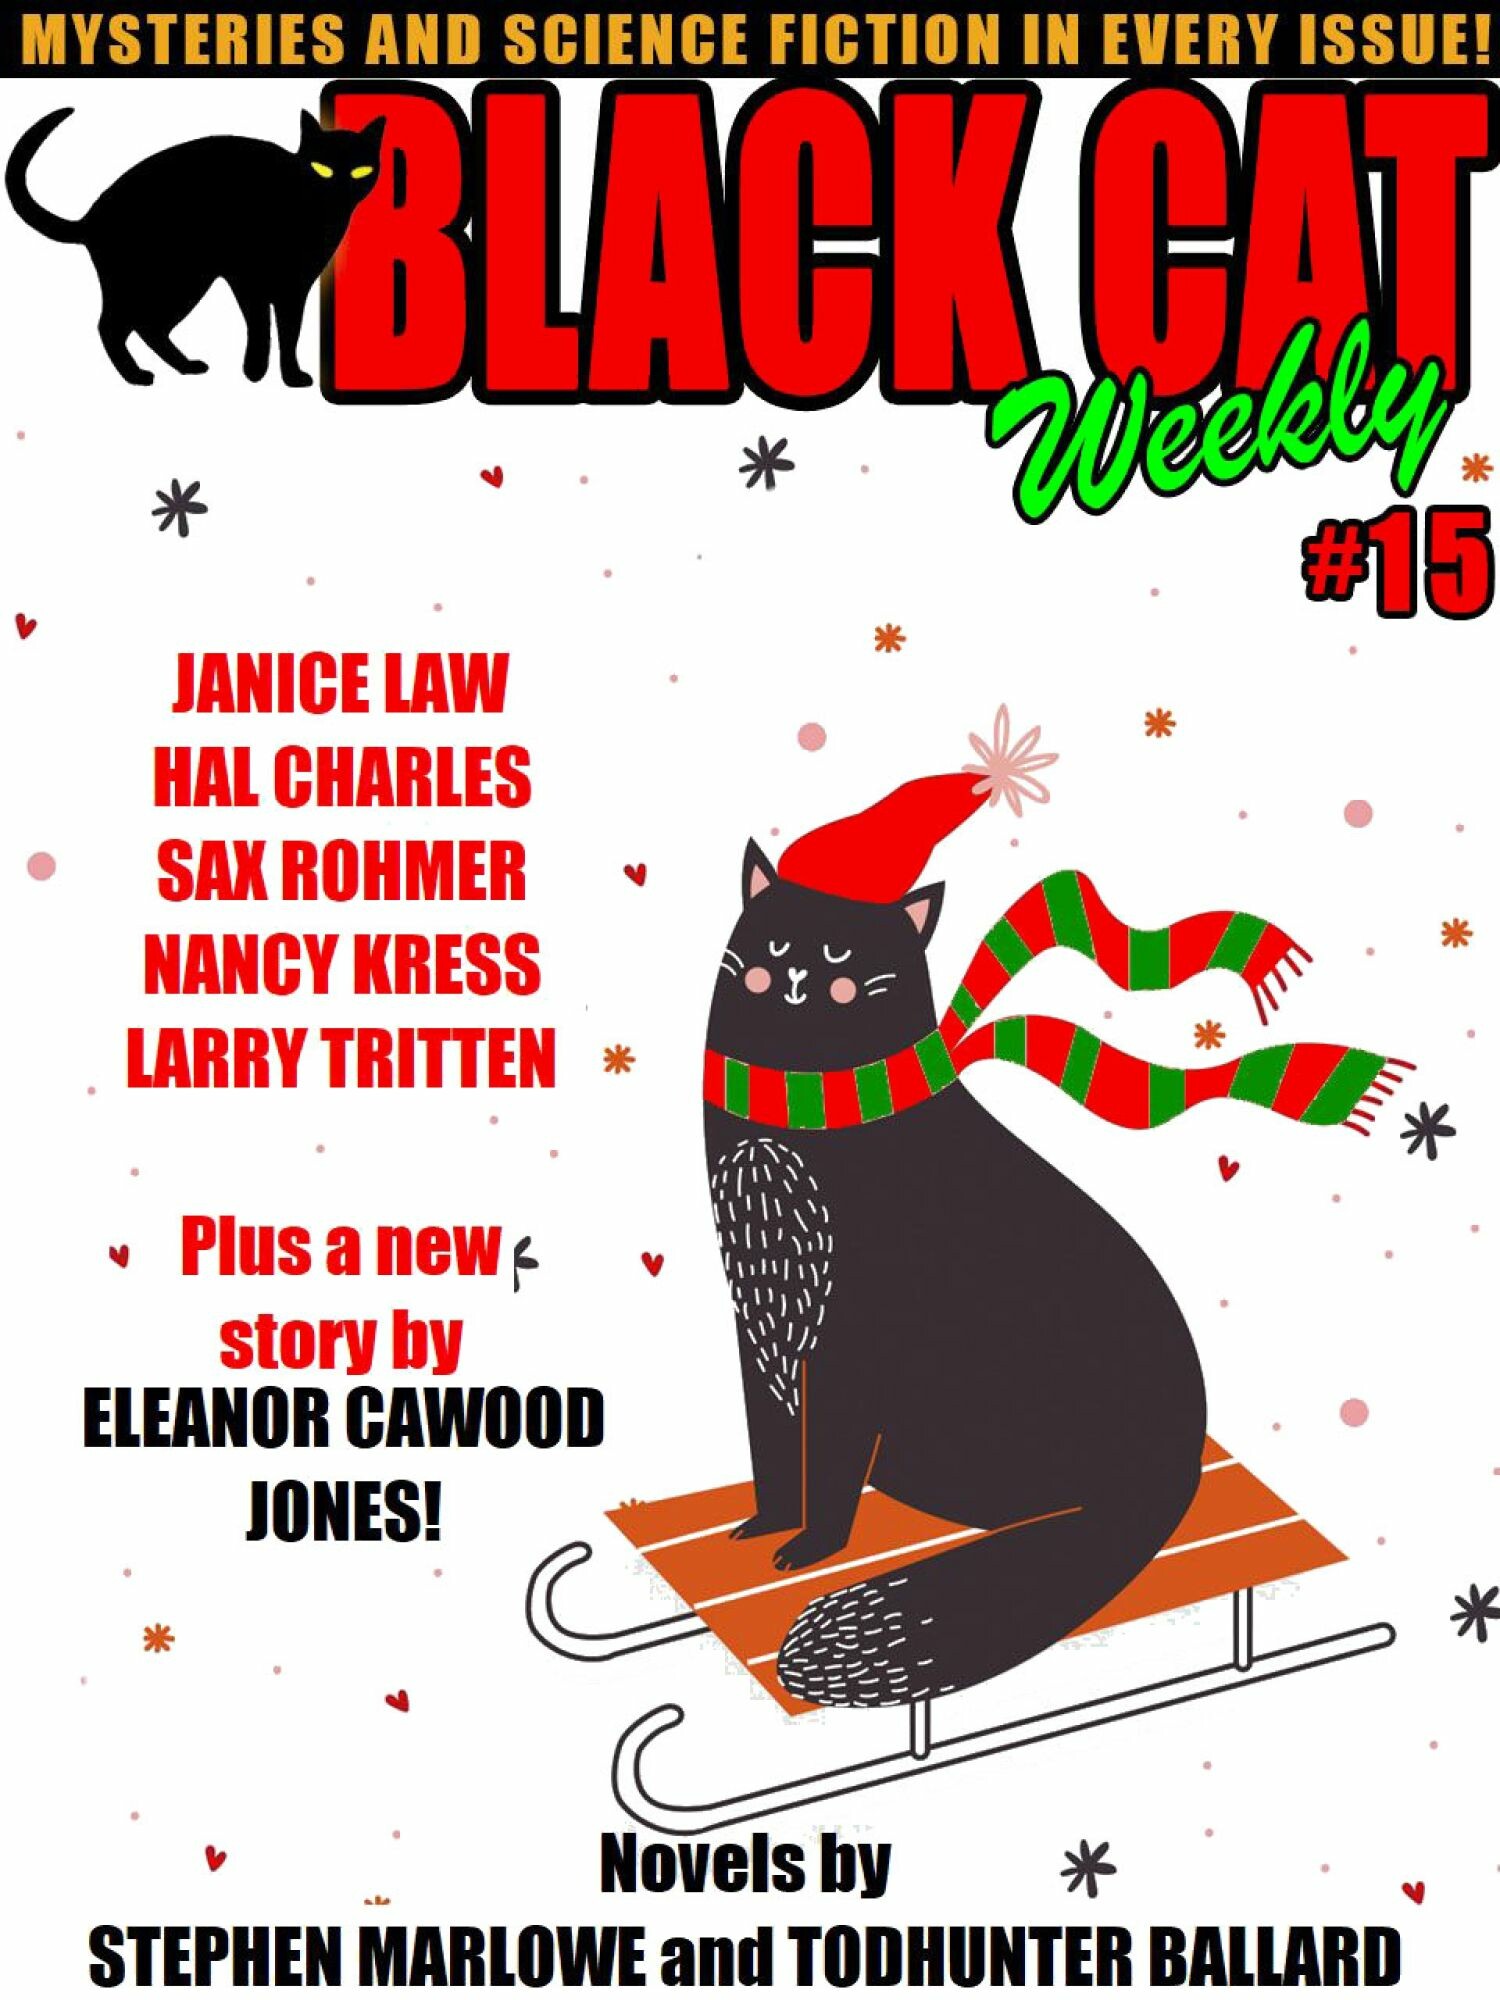 Black Cat Weekly #15